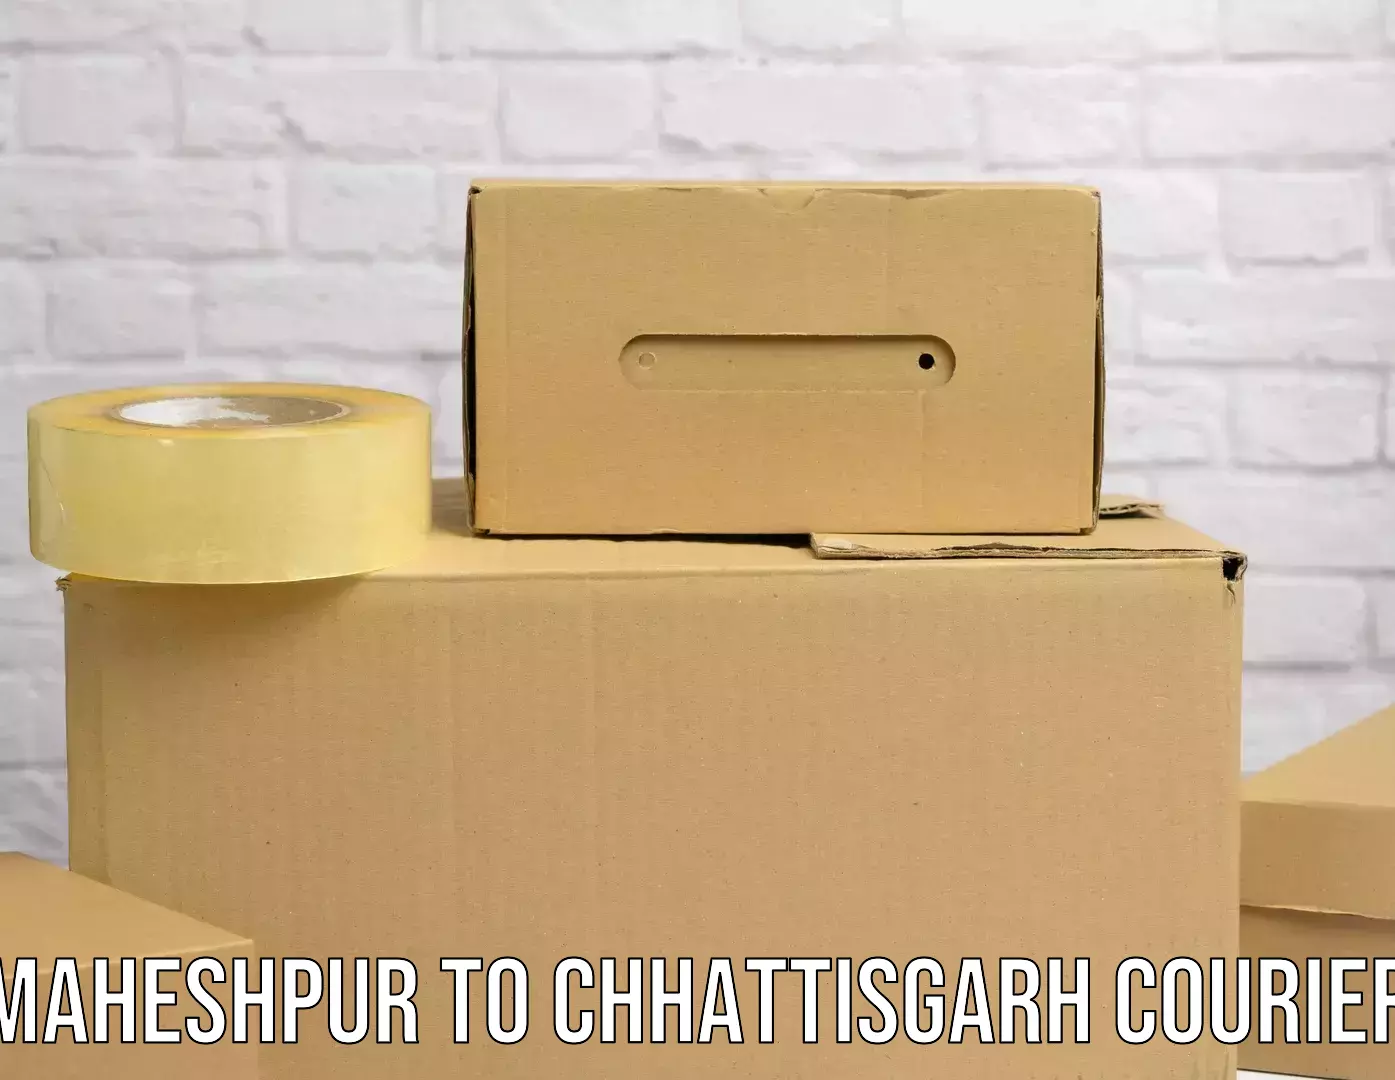 Express package transport in Maheshpur to Raigarh Chhattisgarh